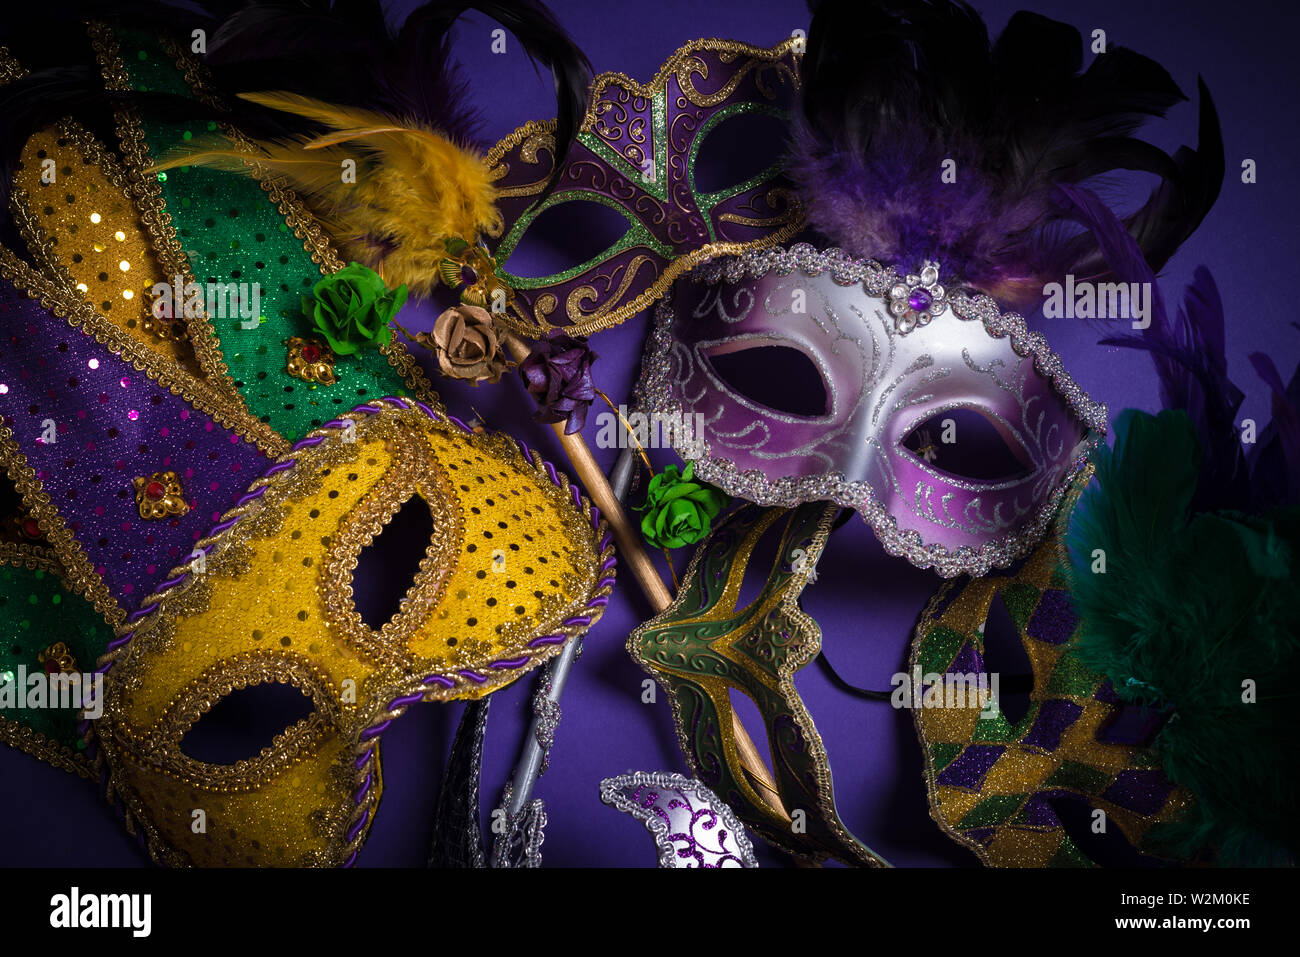 Les masques de Mardi gras sur fond sombre Banque D'Images